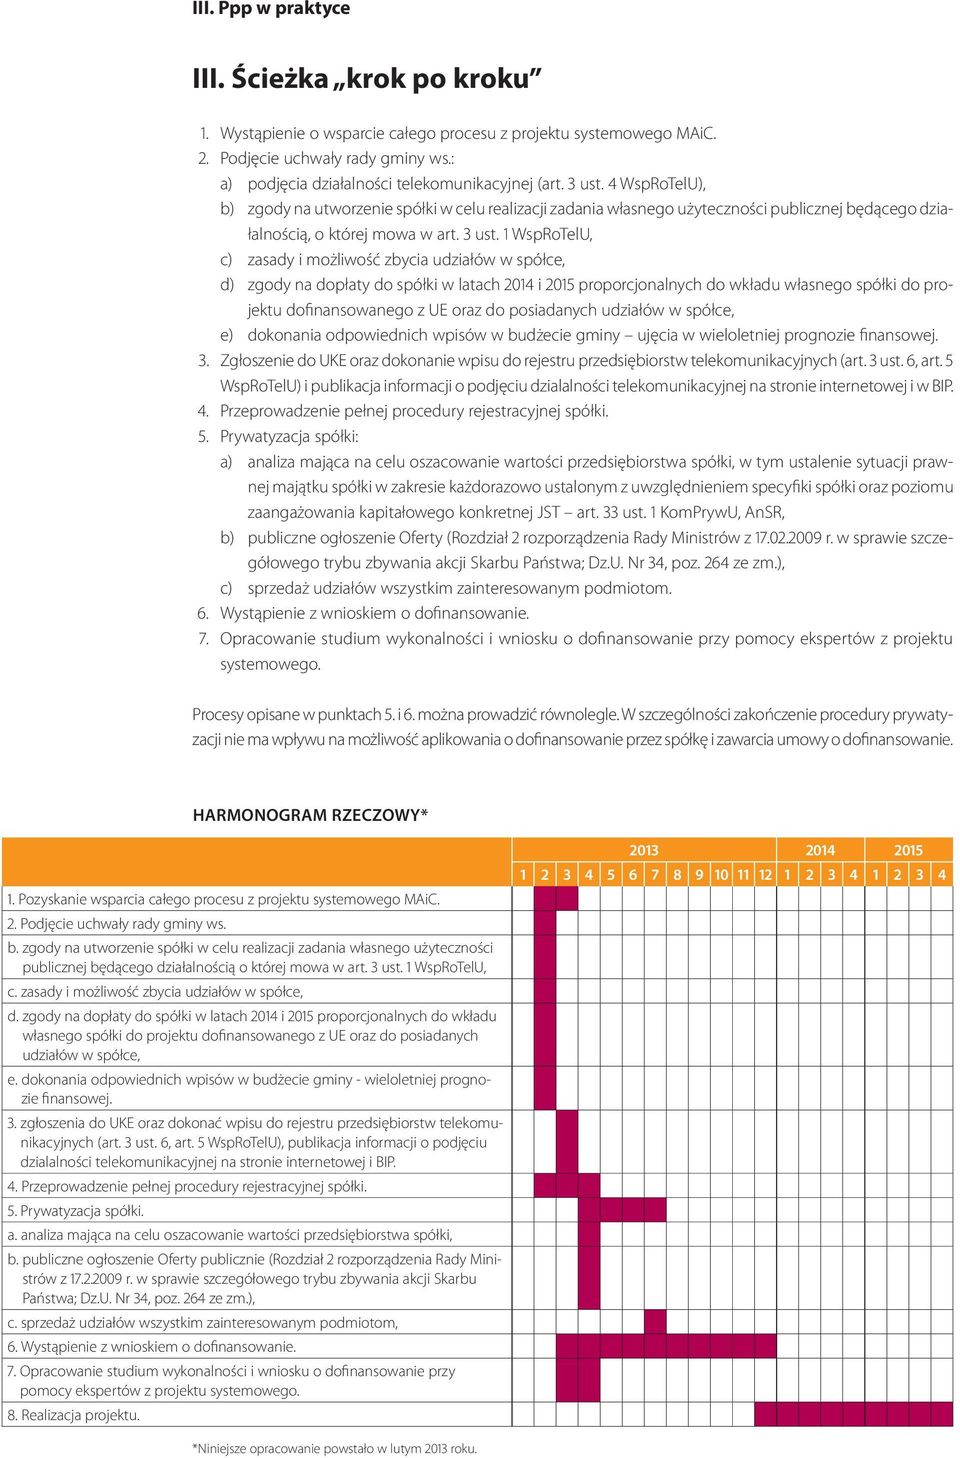 1 WspRoTelU, c) zasady i możliwość zbycia udziałów w spółce, d) zgody na dopłaty do spółki w latach 2014 i 2015 proporcjonalnych do wkładu własnego spółki do projektu dofinansowanego z UE oraz do